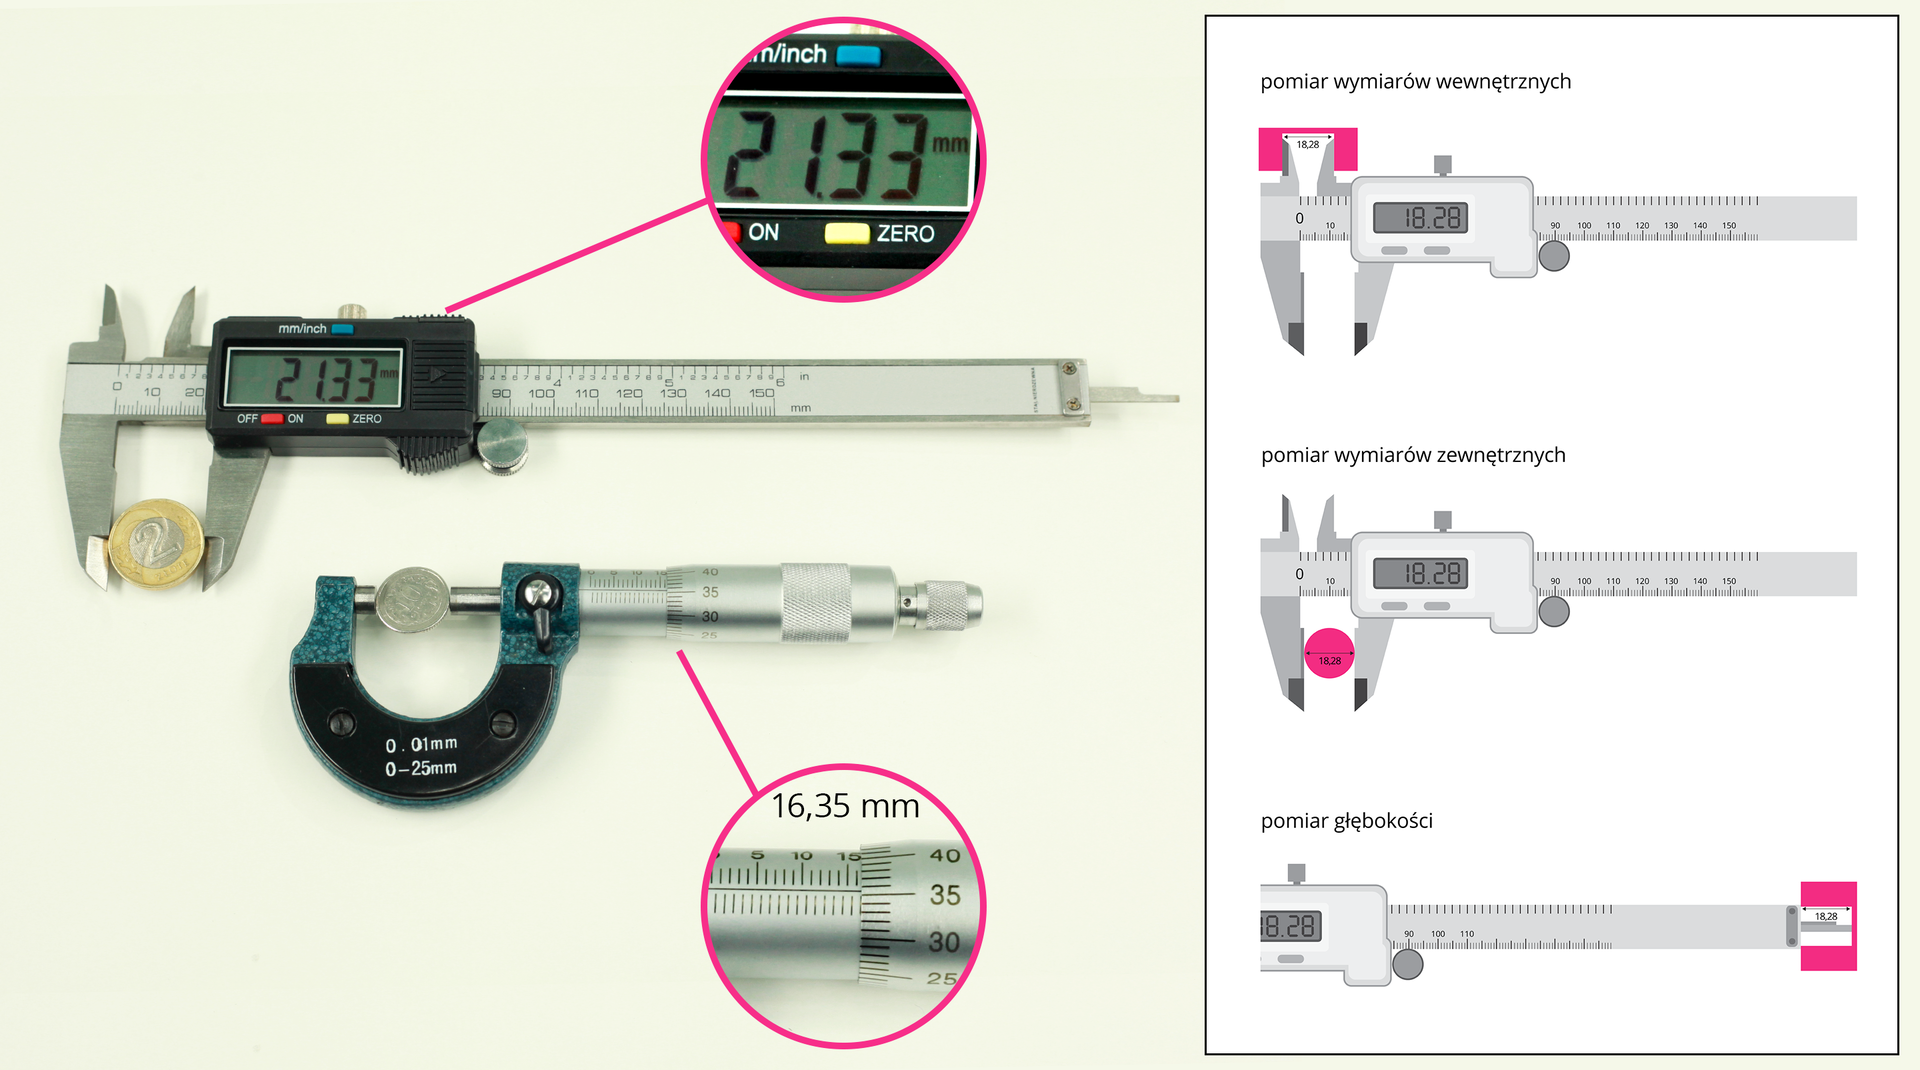 Ilustracja przedstawia przyrządy do dokładnych pomiarów długości: suwmiarkę i śrubę mikrometryczną.